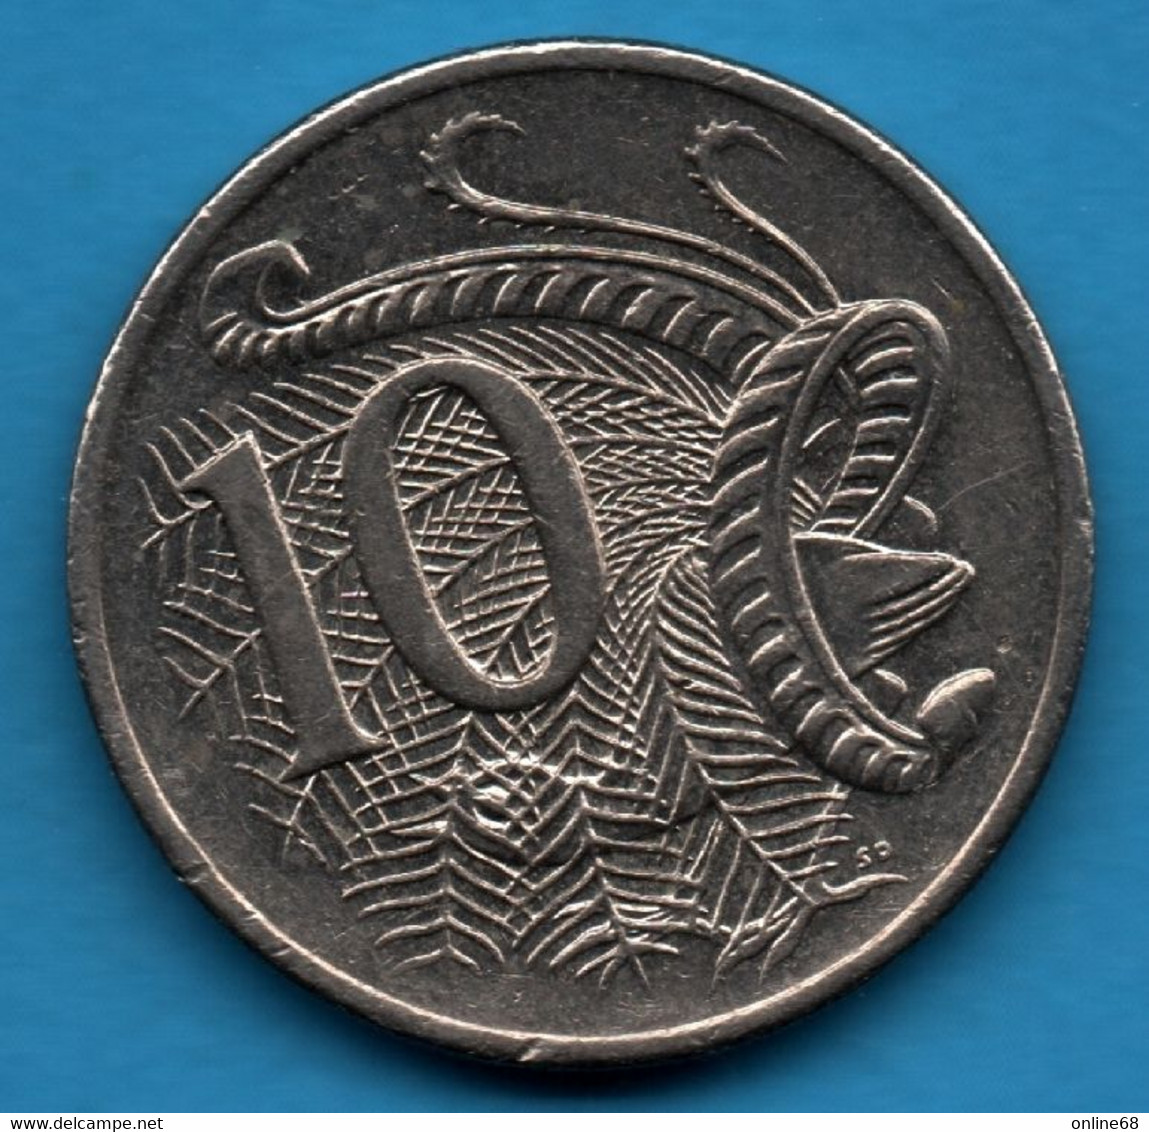 AUSTRALIA 10 CENTS 2001 KM# 401 Echidna  QEII - 10 Cents